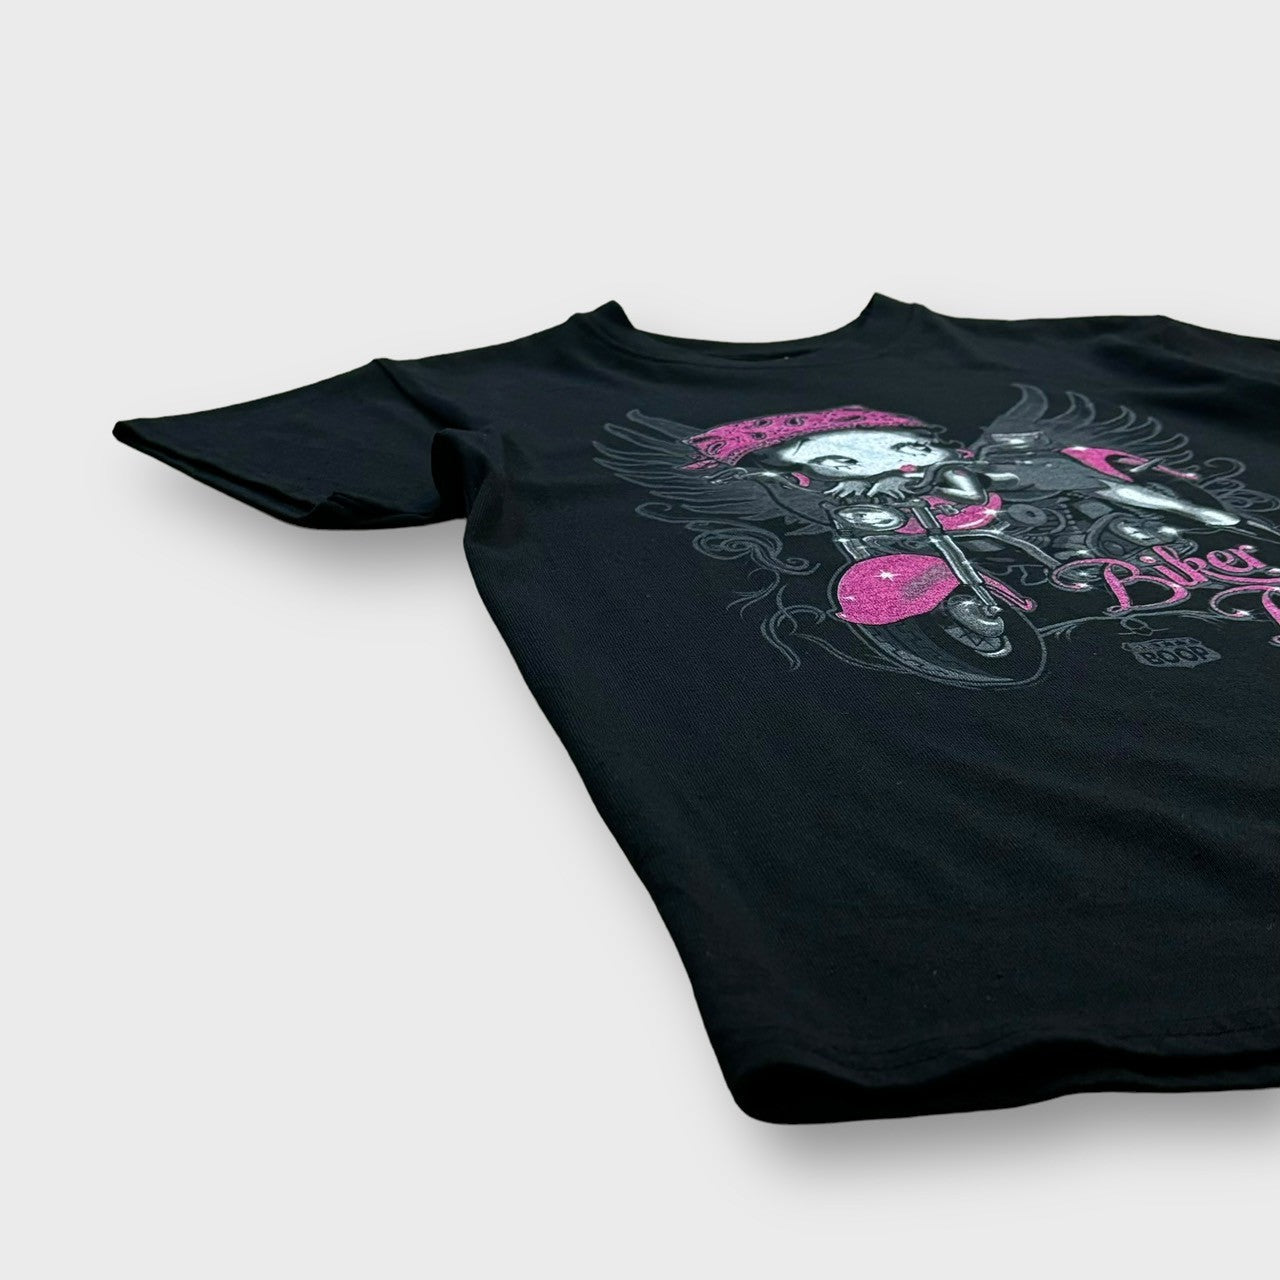 "Betty Boop" design t-shirt